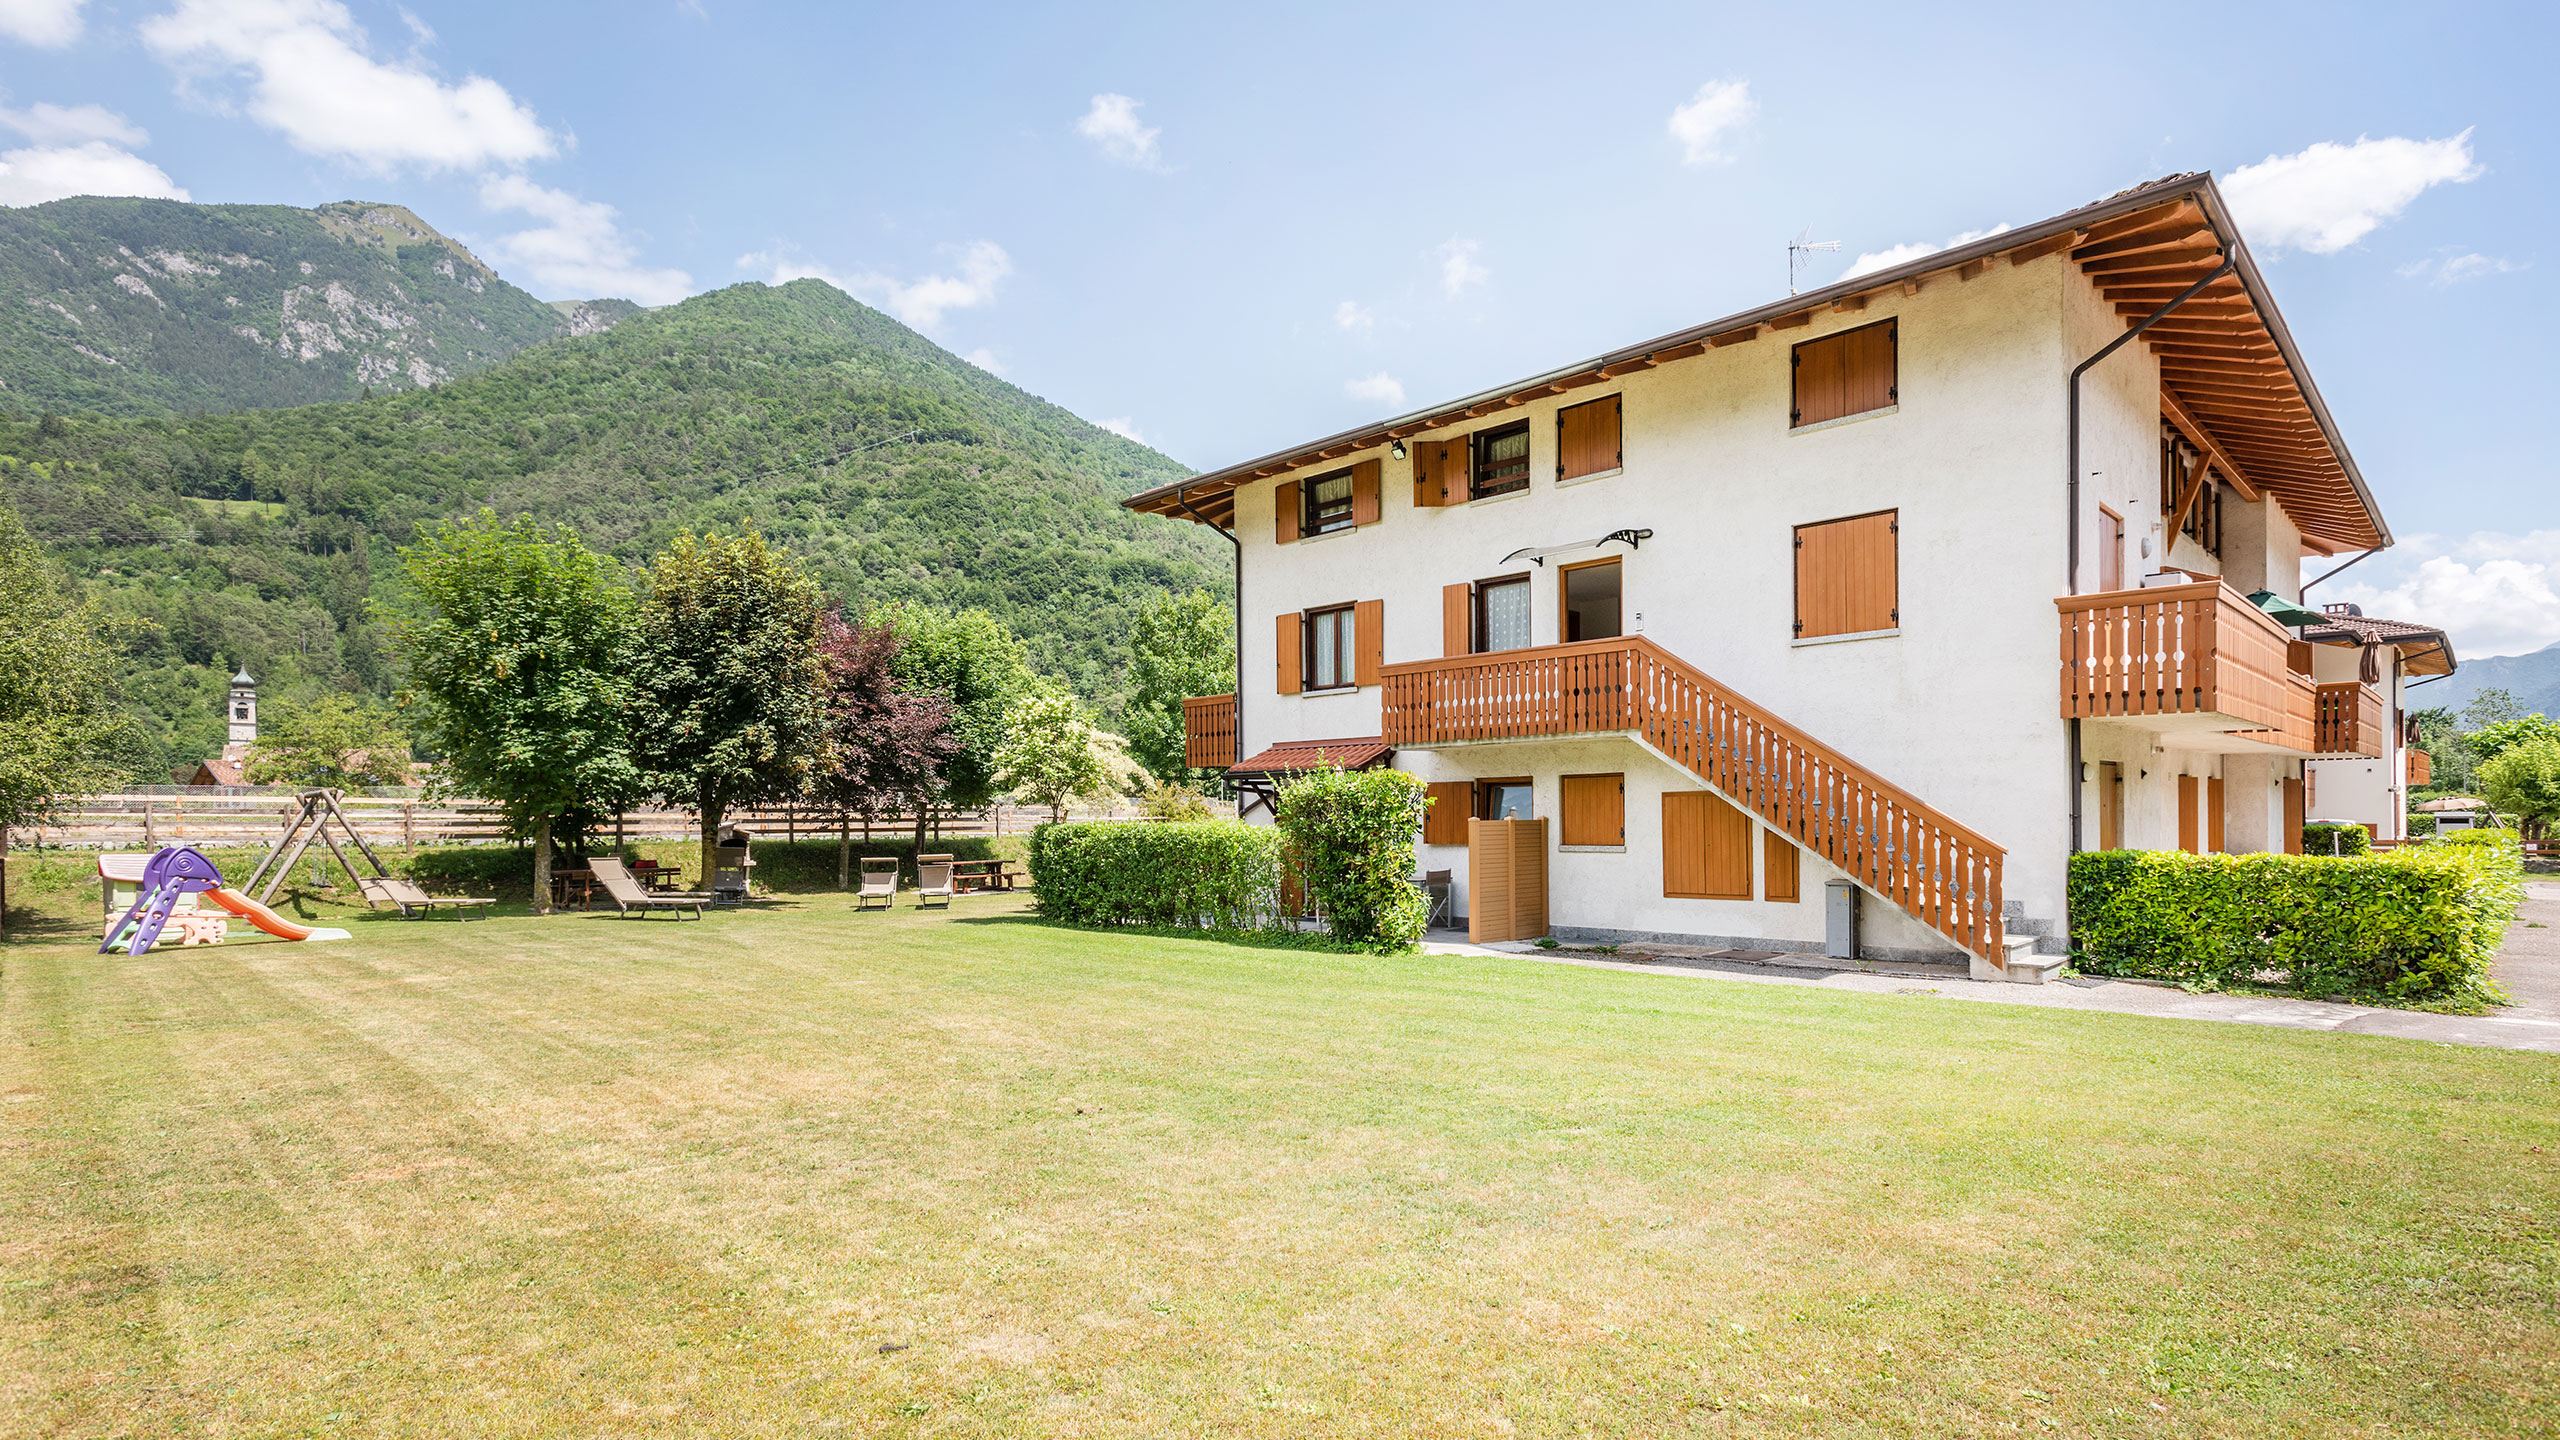 Crosina Holiday - appartamenti vicino al Lago di Ledro in Trentino per una vacanza in coppia o in famiglia  Benvenuti a Casa Lucia